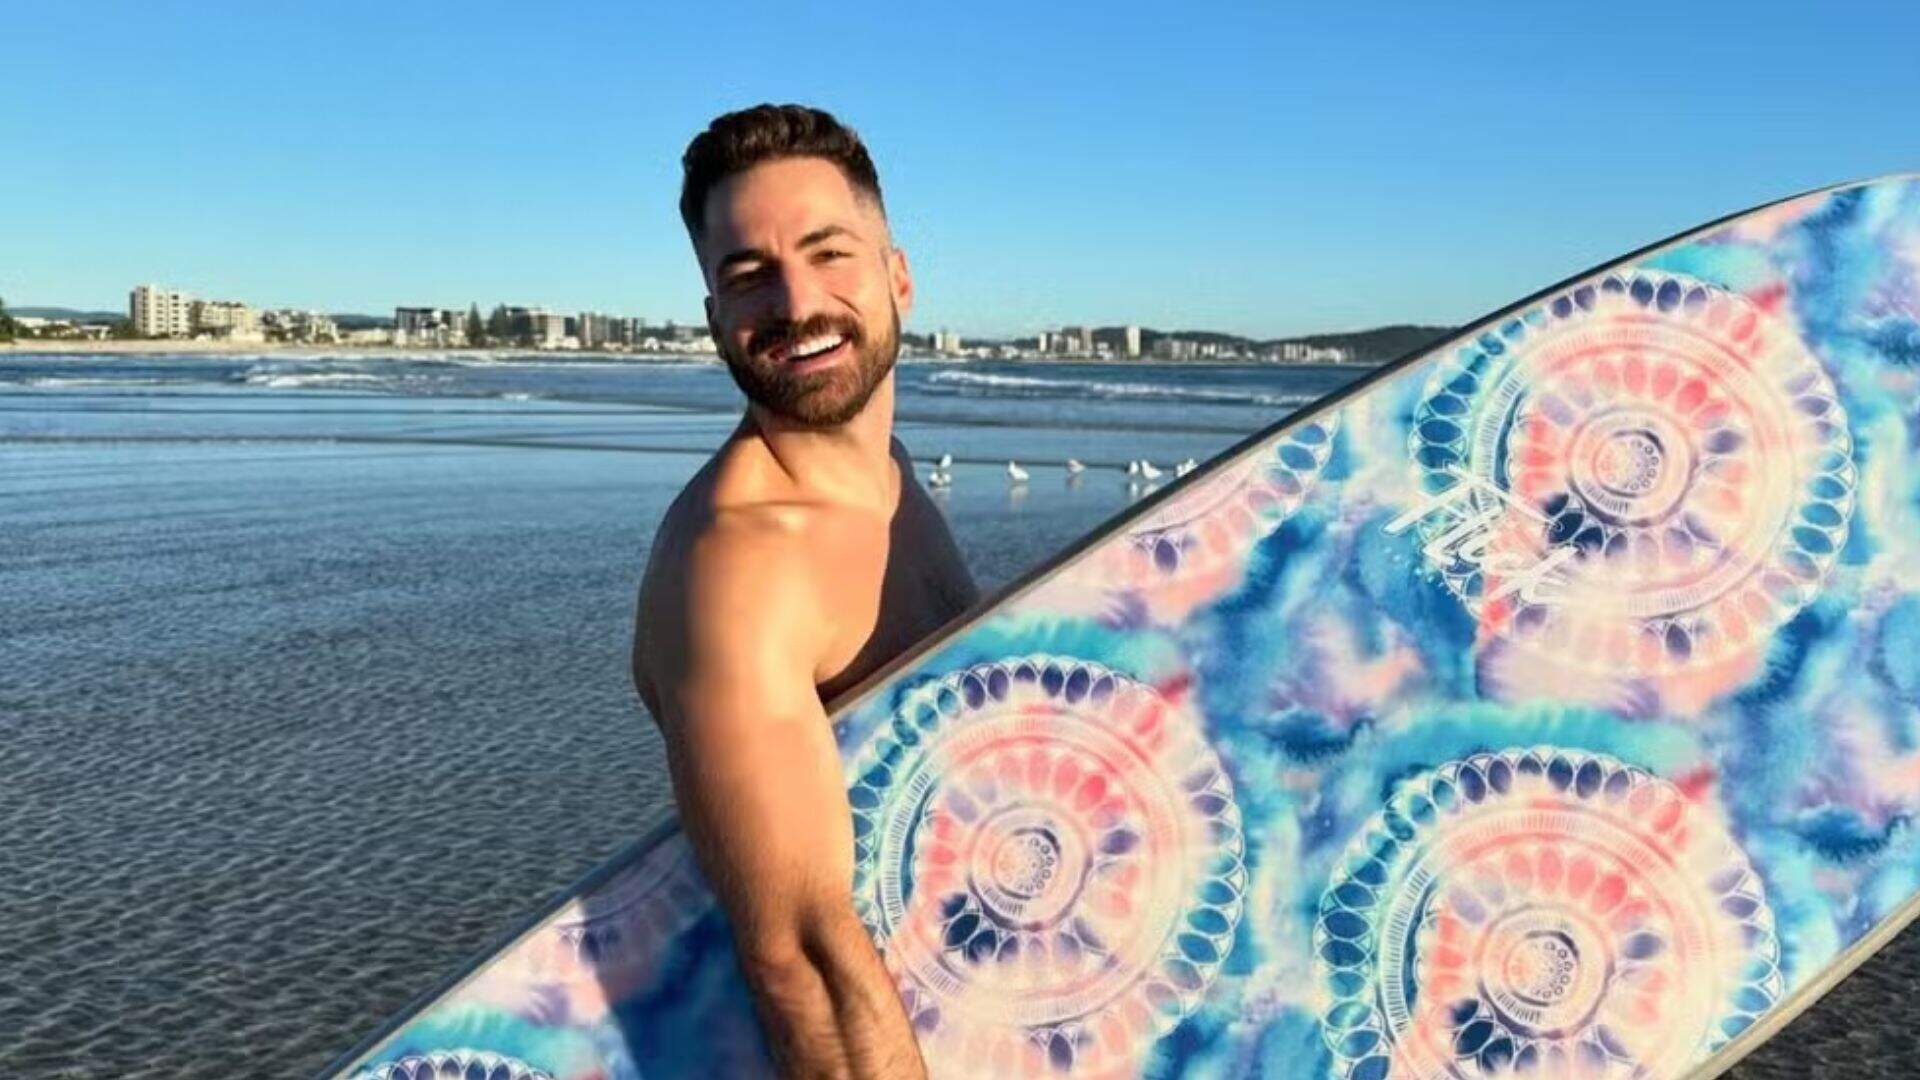 Na Austrália, Thales Bretas aproveita dia de sol e mostra rotina de surfe nas redes sociais - Metropolitana FM